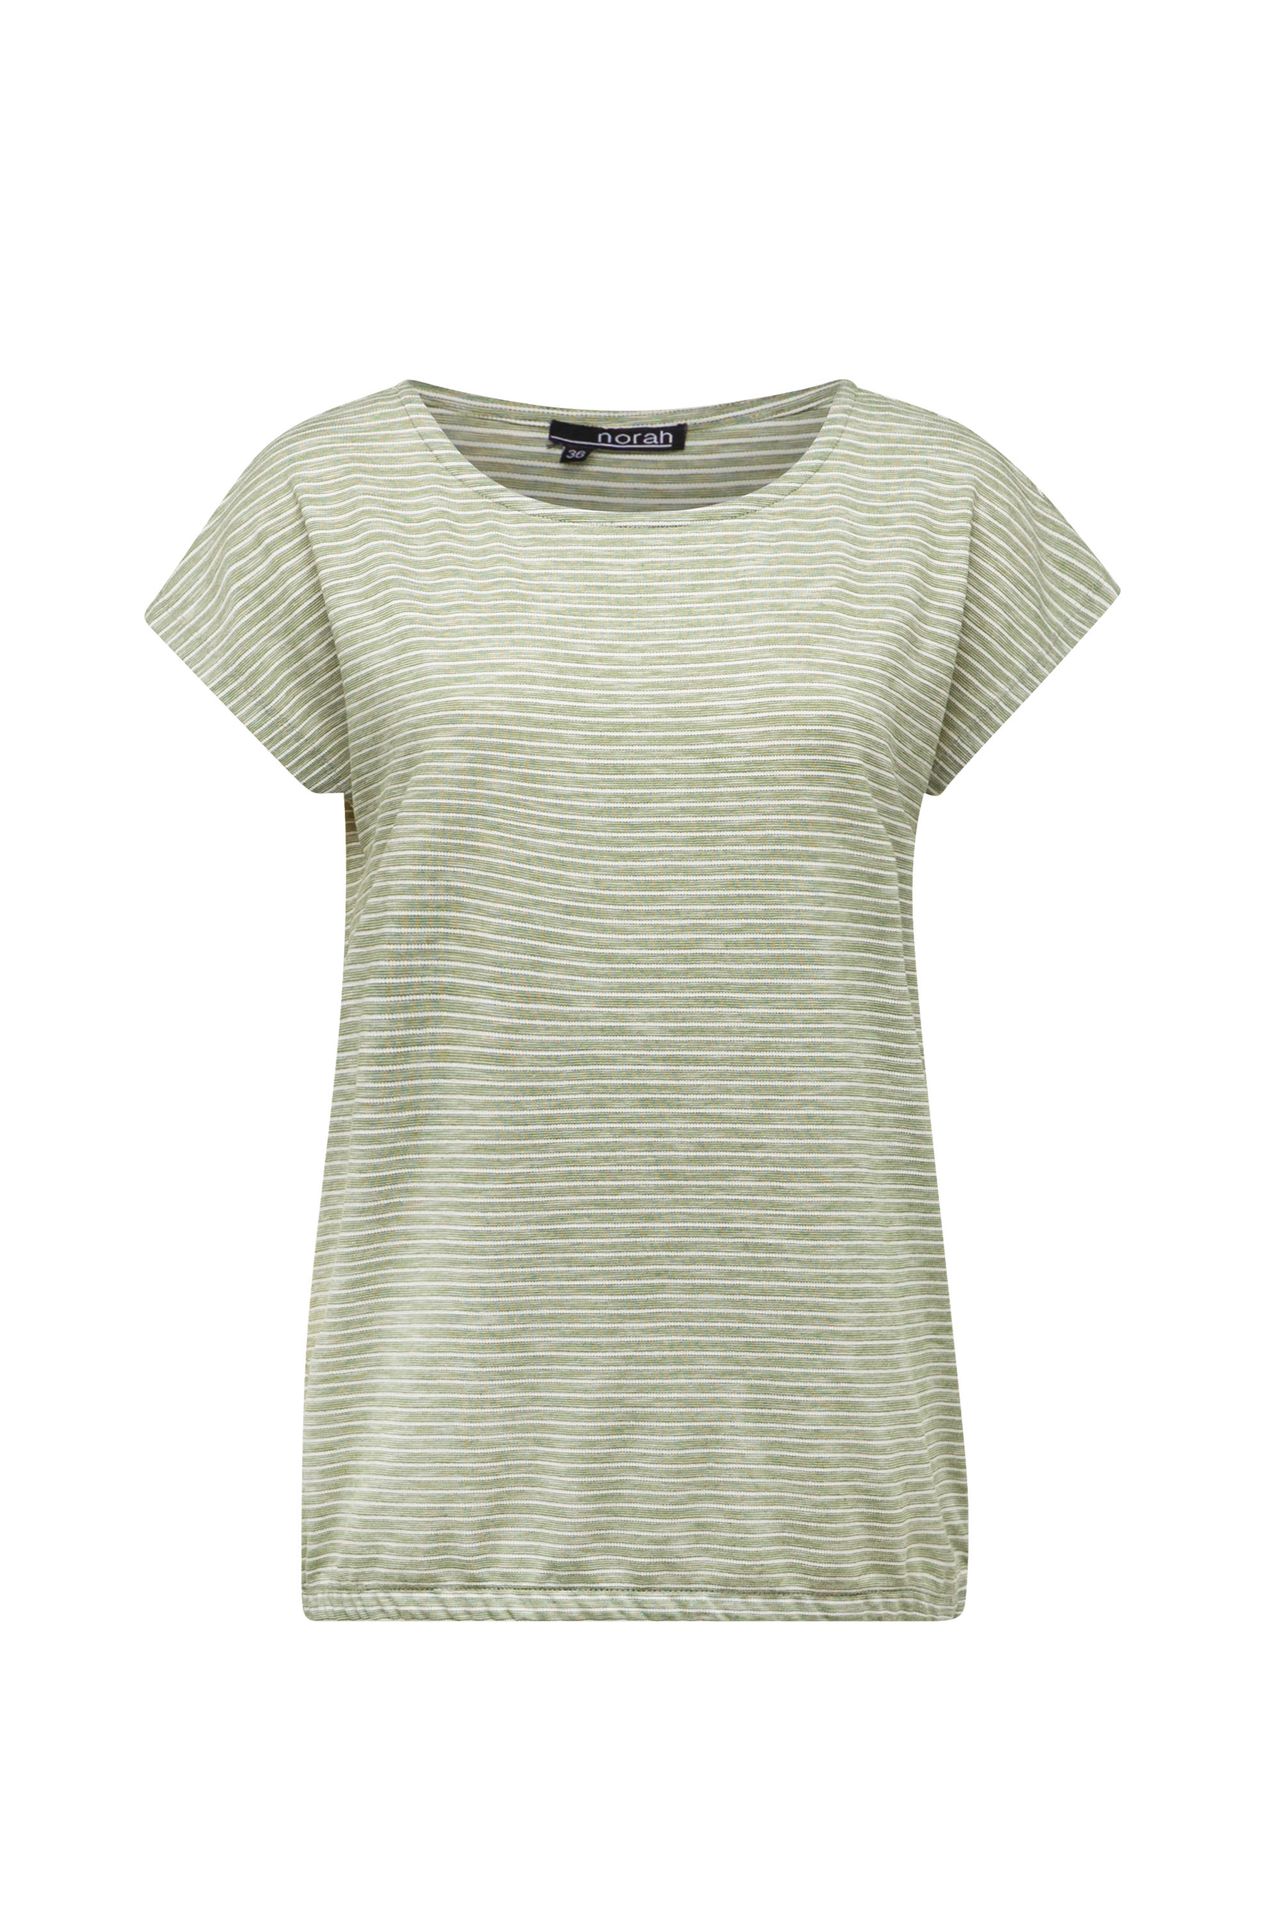 Norah Groen gestreept shirt green/ecru 213490-541